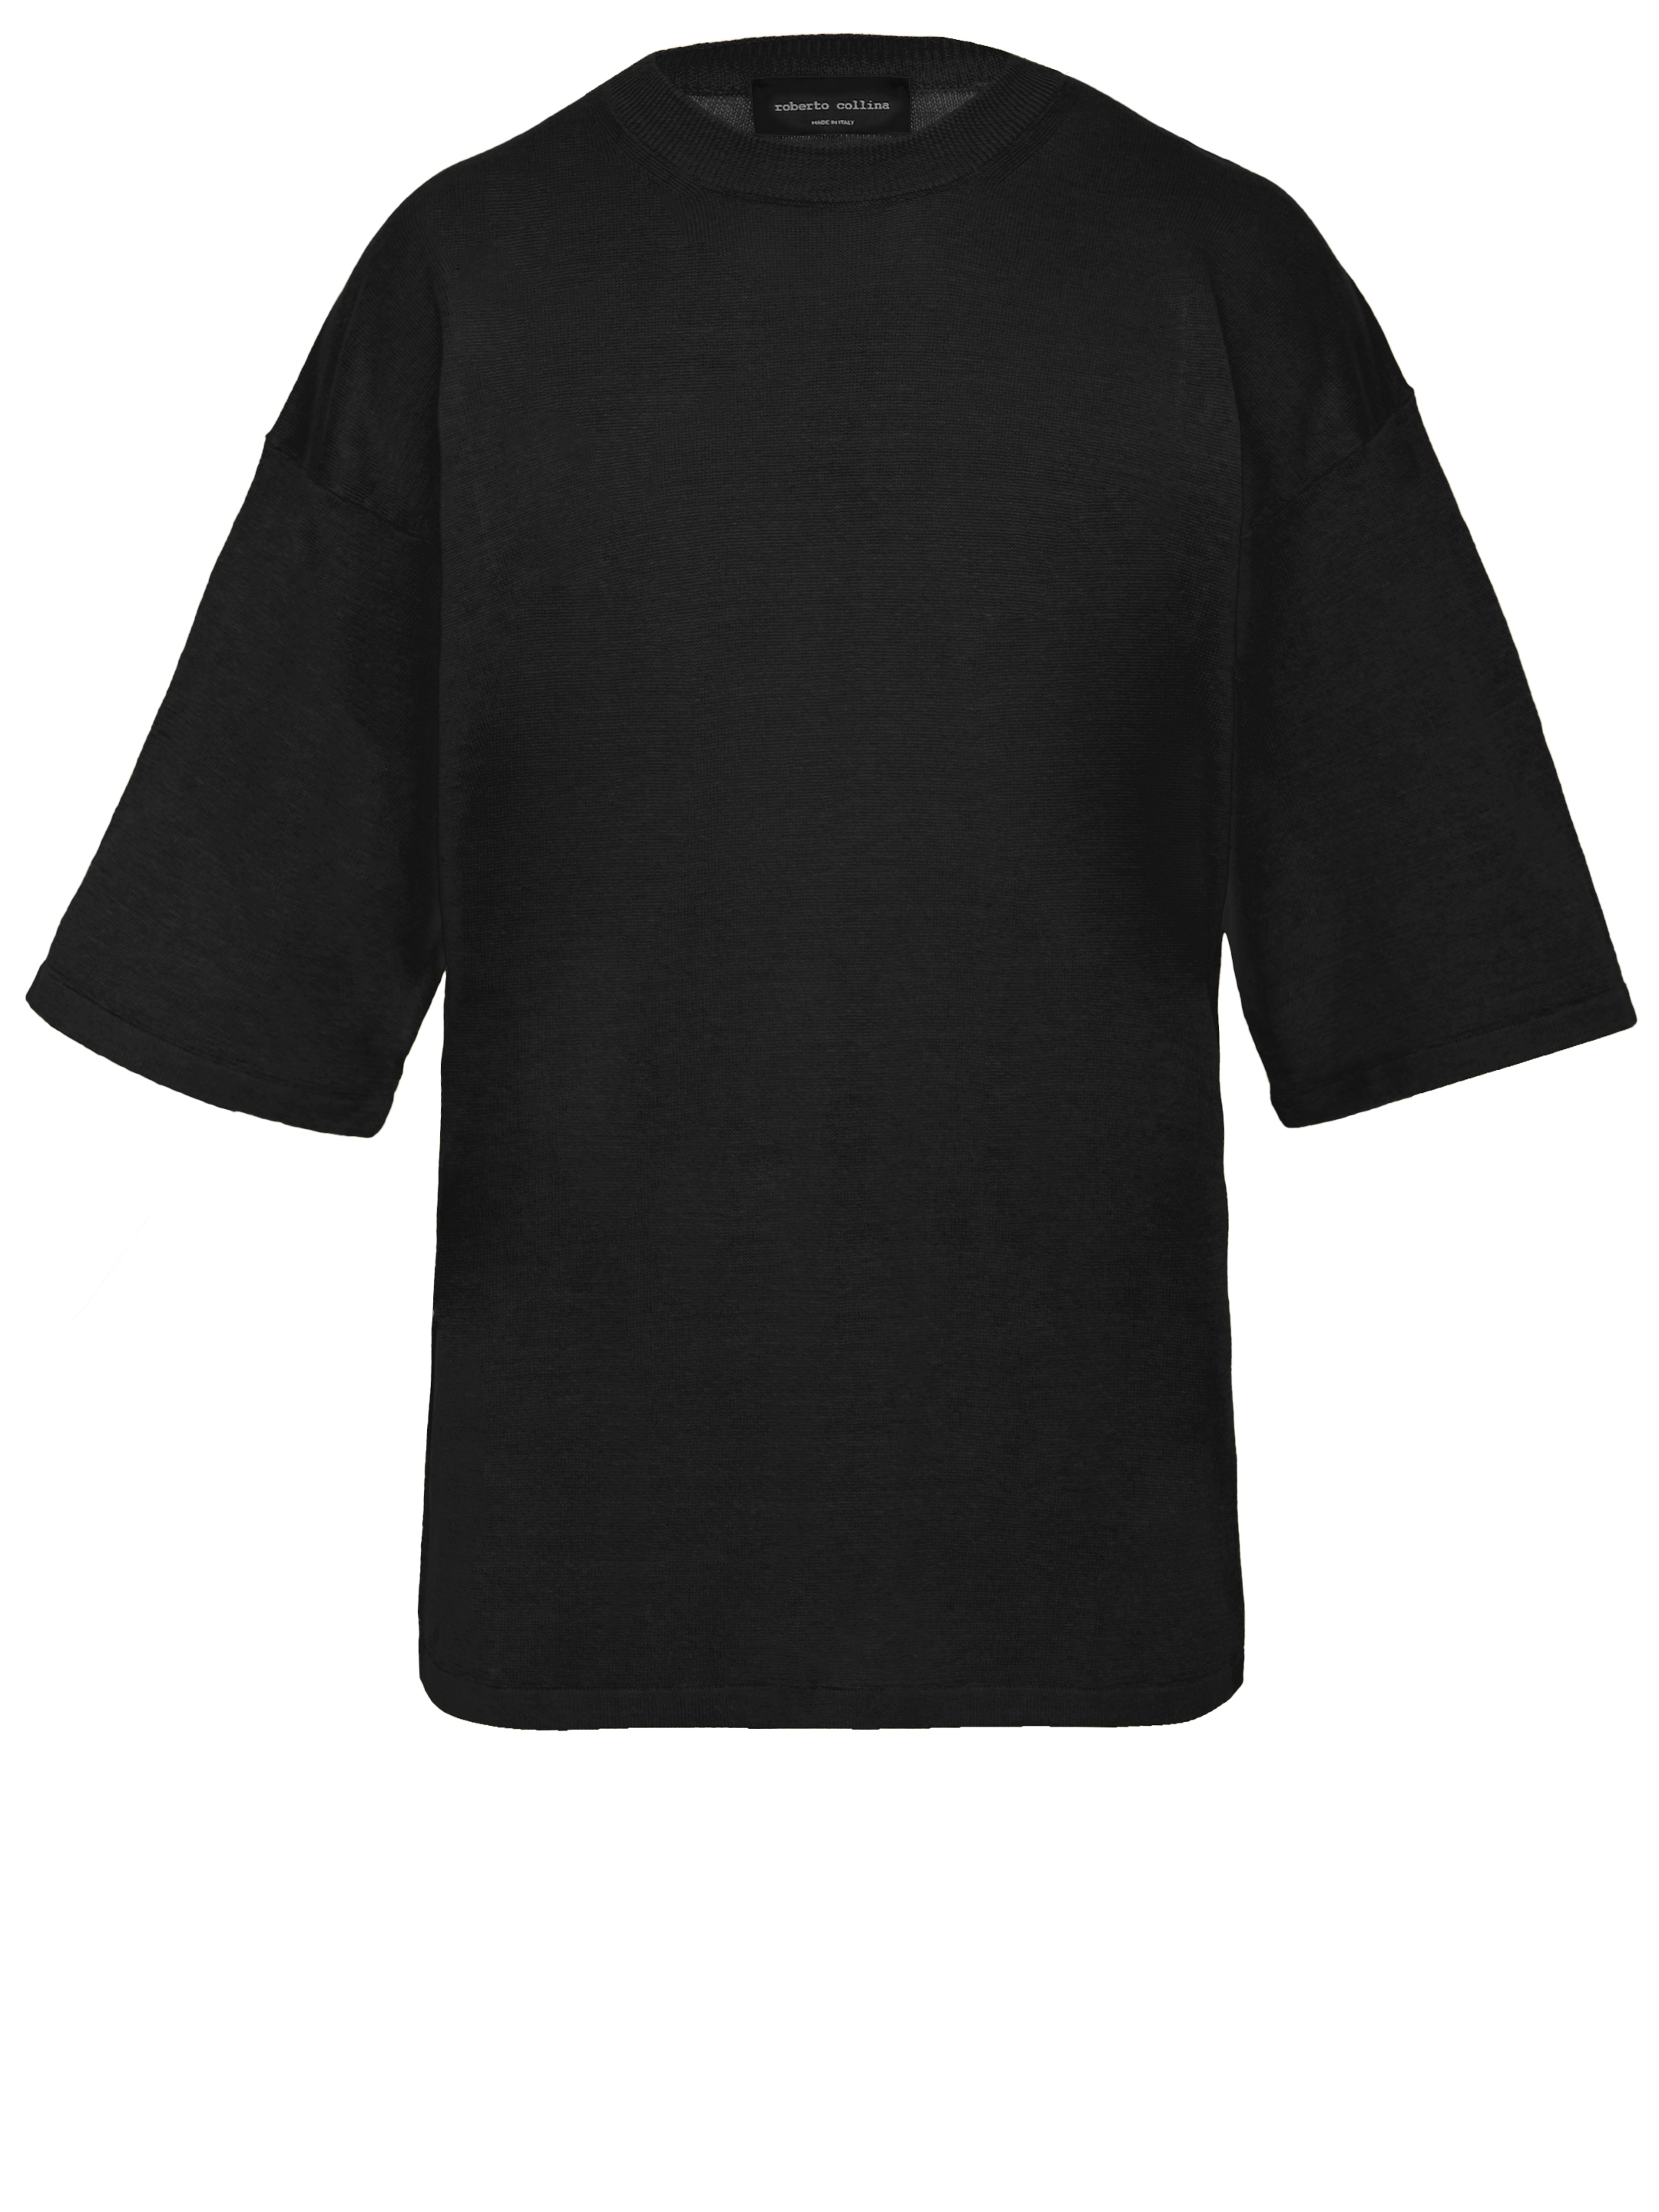 Джемпер Roberto Collina Linen, черный футболка laredoute футболка из льна с круглым вырезом и короткими рукавами l белый